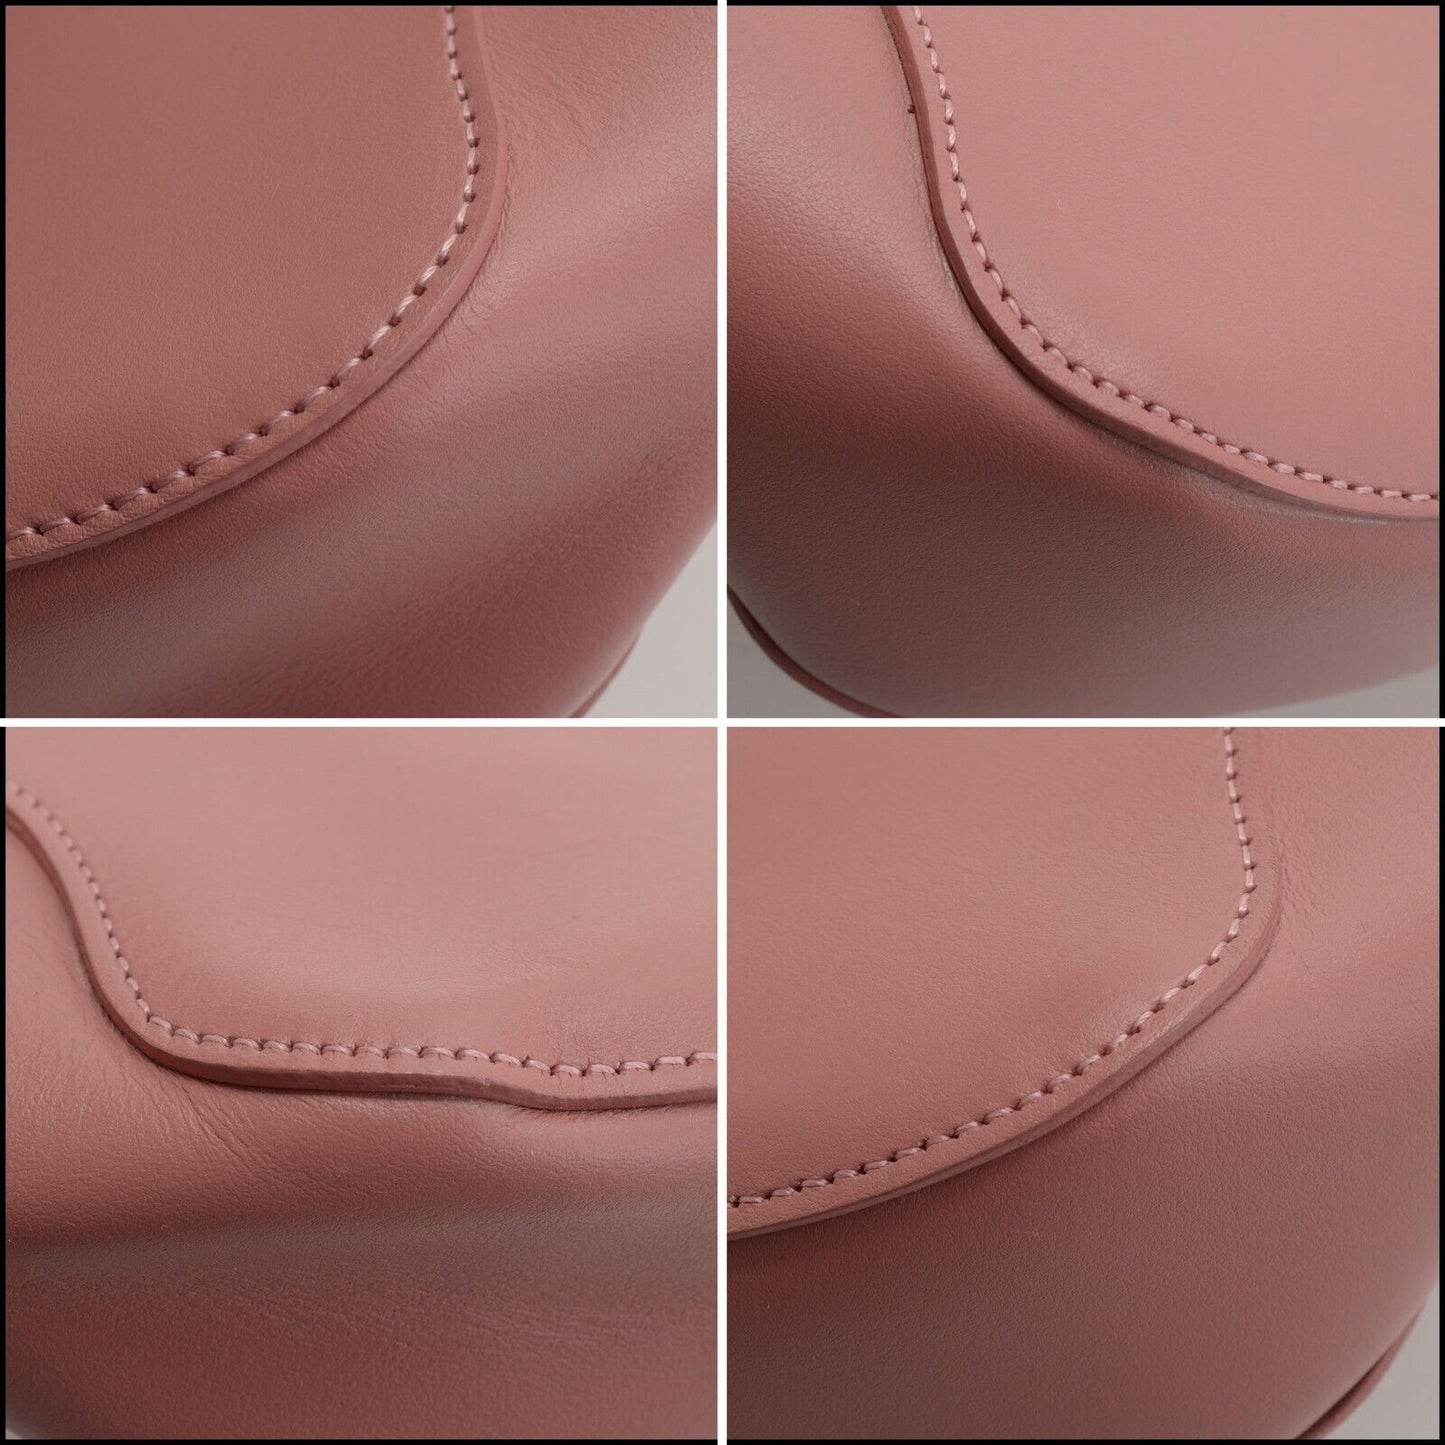 RDC13684 Authentic MANSUR GAVRIEL Blush Pink Leather Mini Ocean Tote Bag